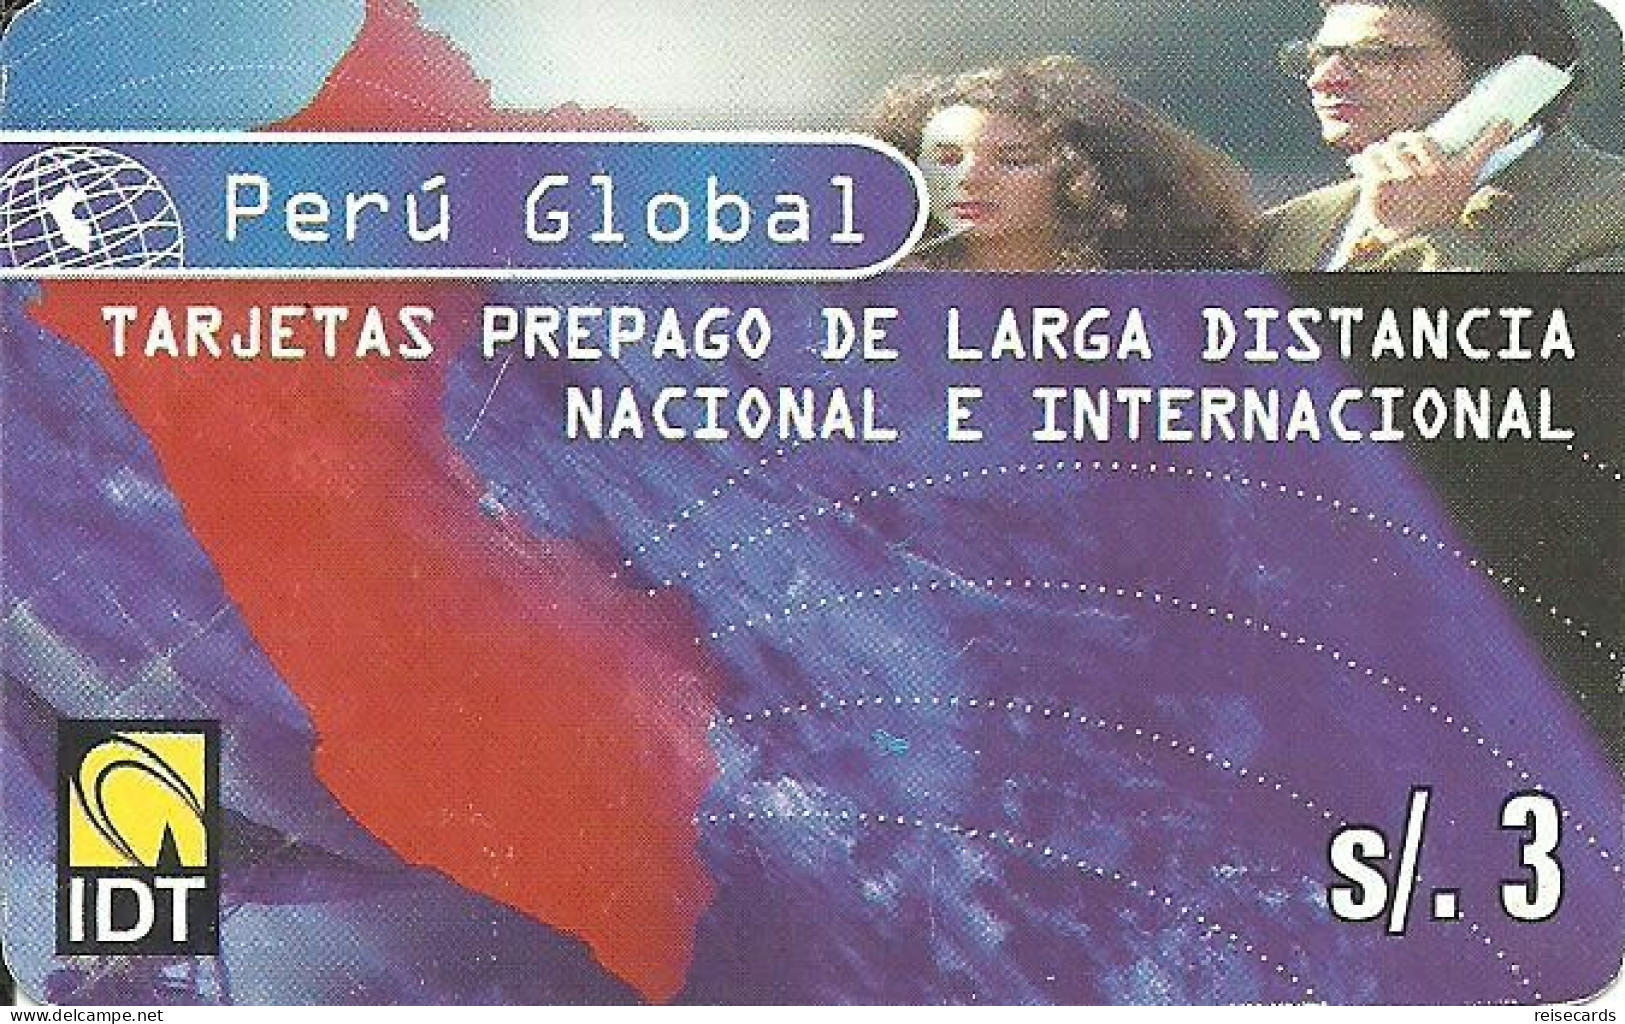 Peru: Prepaid IDT - Alcard Perú Global - Pérou